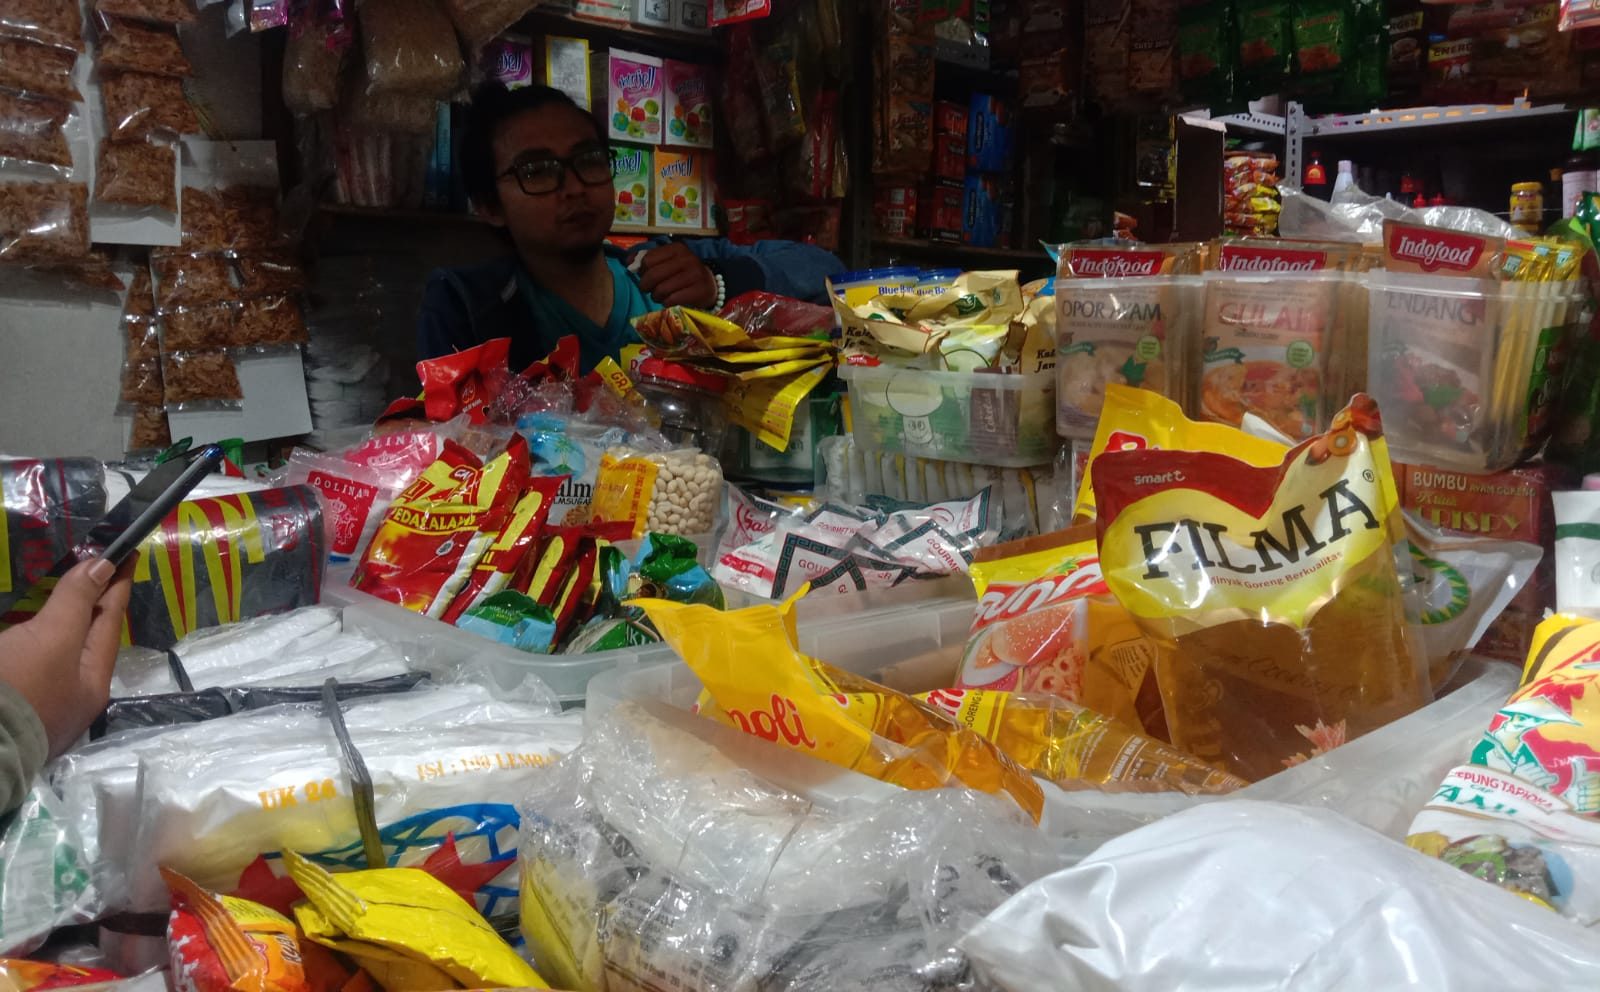 Imbas Penurunan Harga, Pedagang Minyak Goreng di Pasar Minta Kompensasi dari Pemerintah